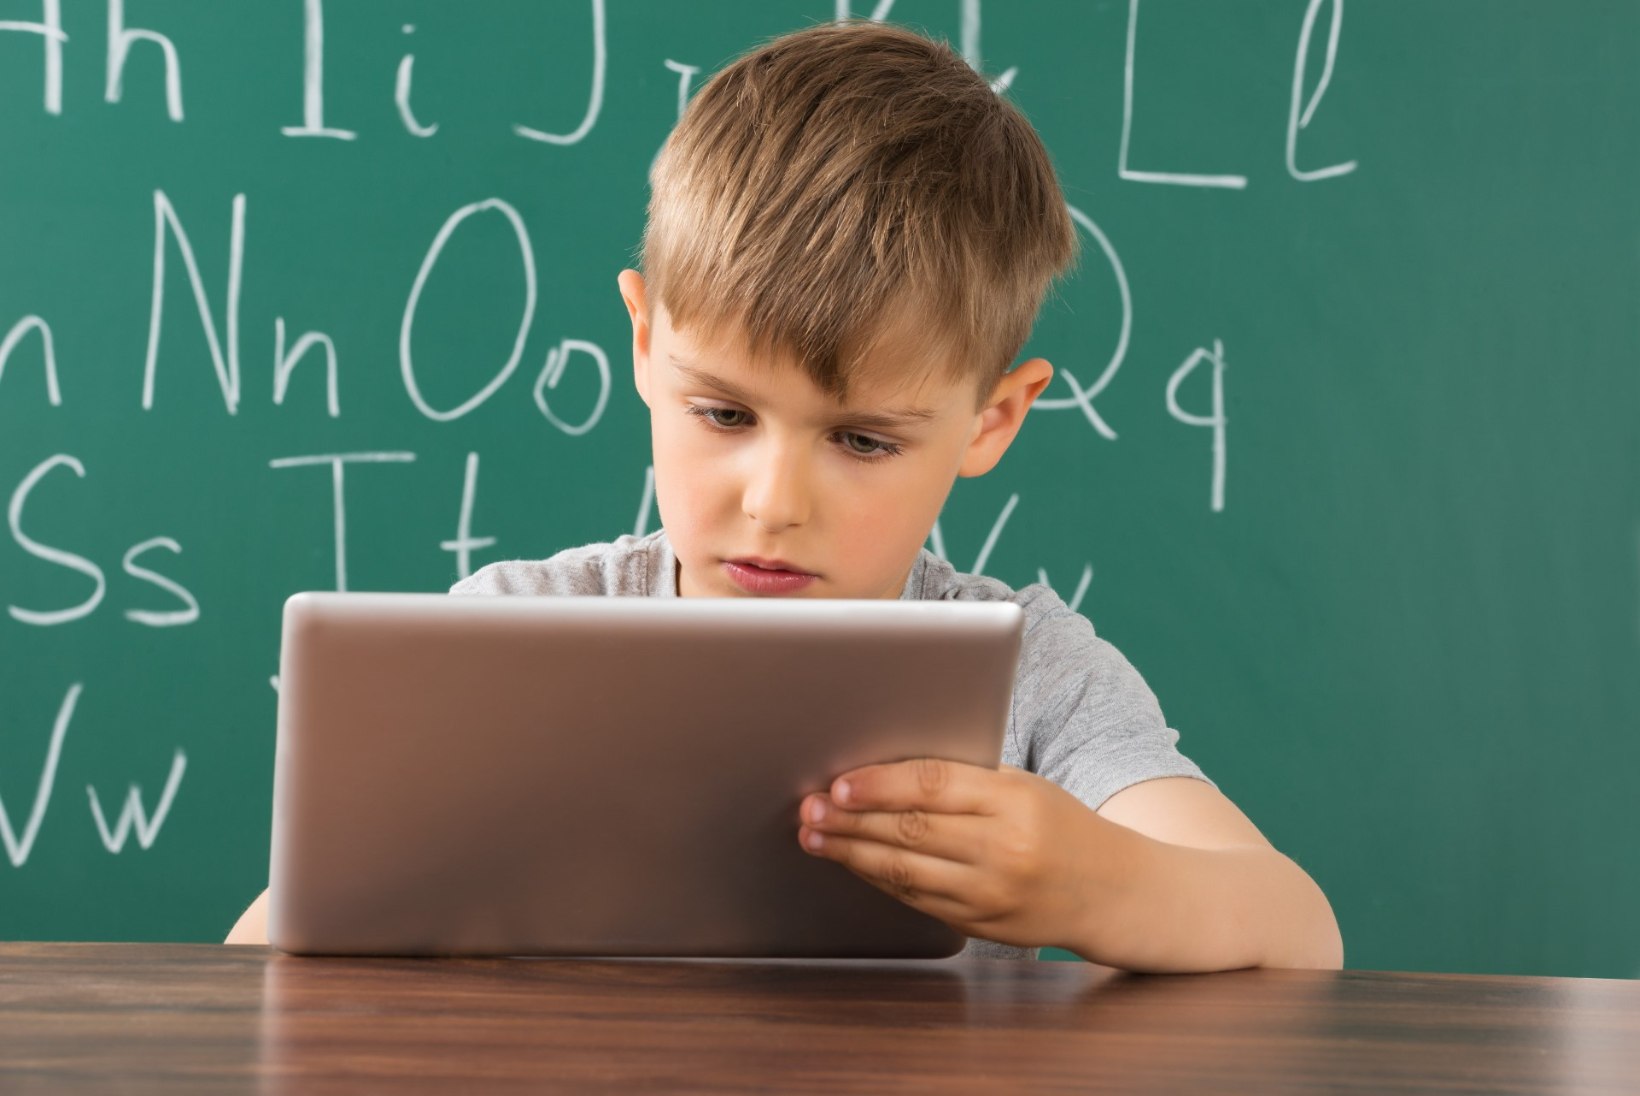 Kas tead, millega laps internetis tegeleb?